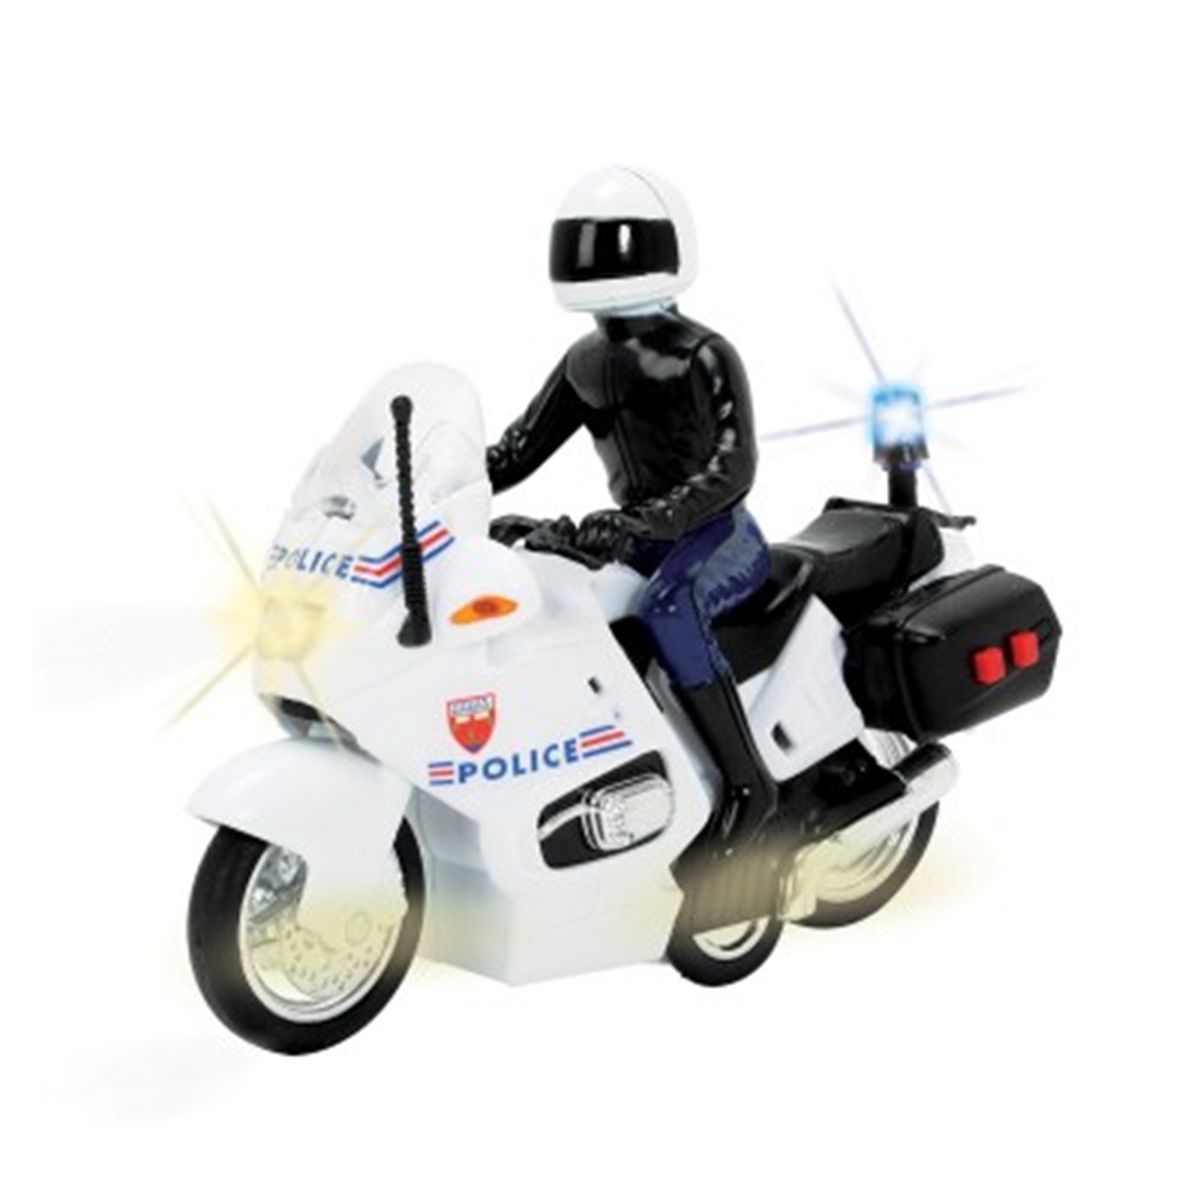 Police motos jouets pour les enfants, dessin animé 